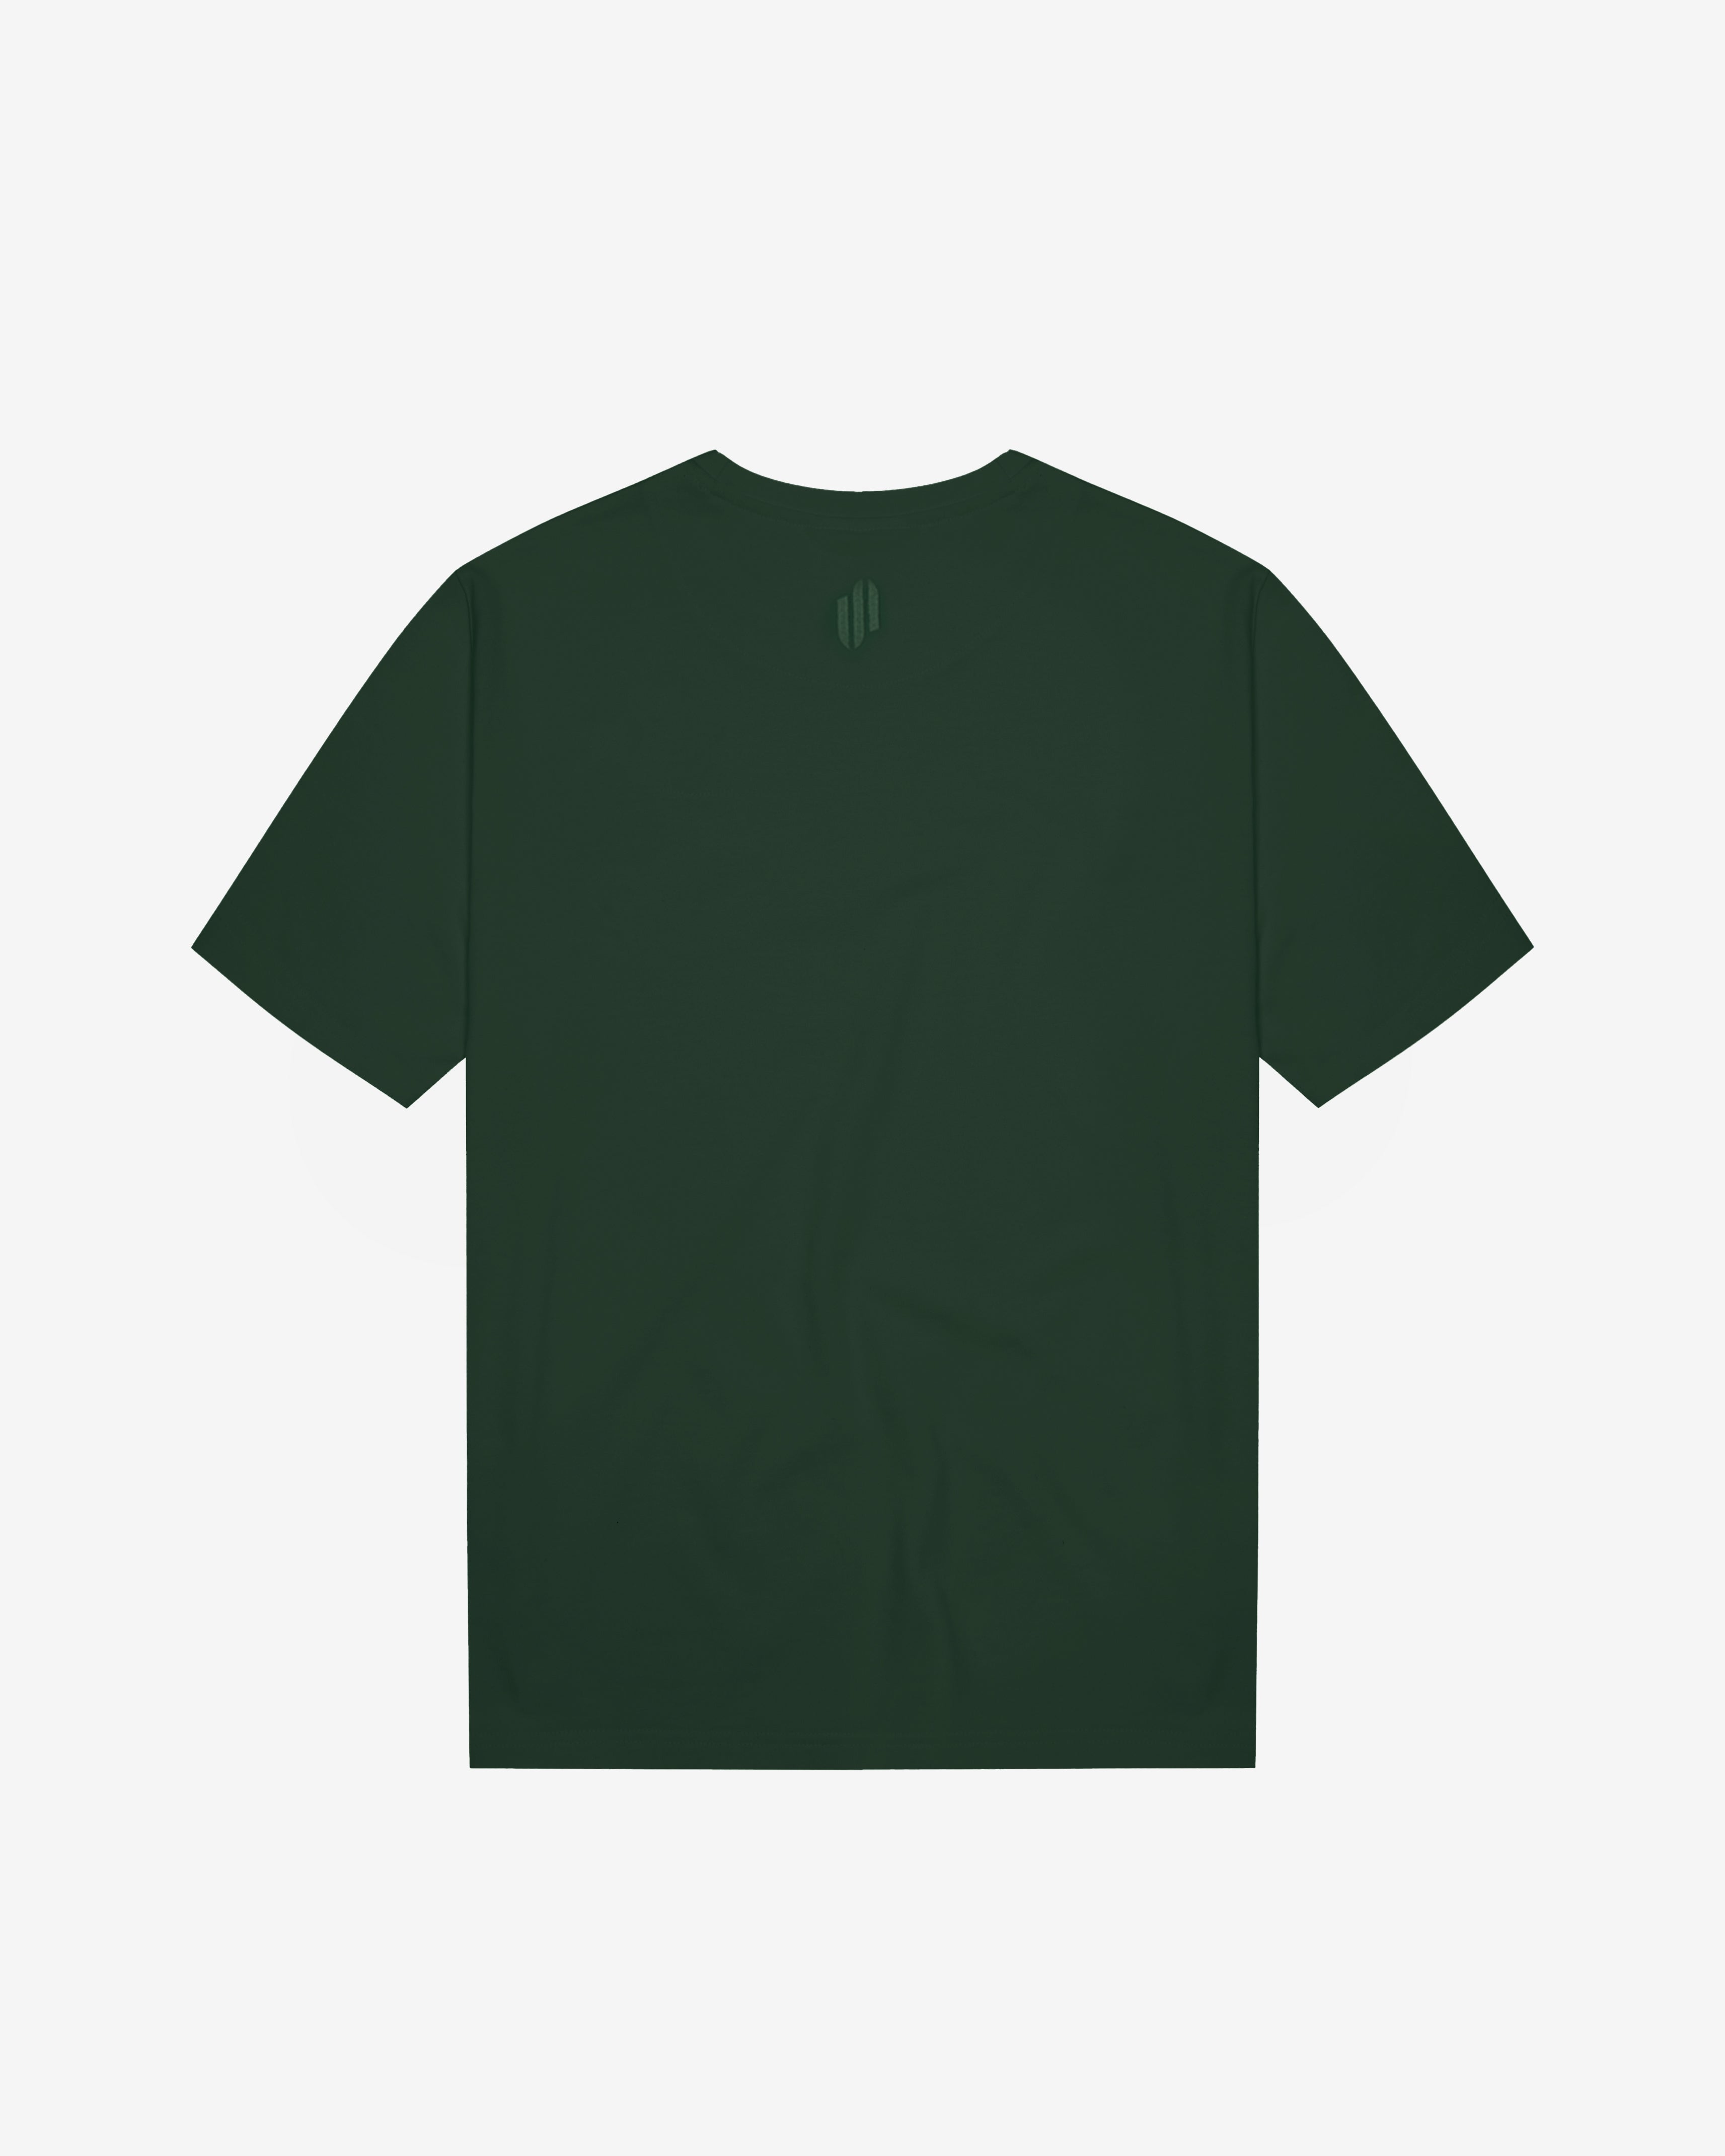 VC: ZAF - Vintage T-Shirt - South Africa